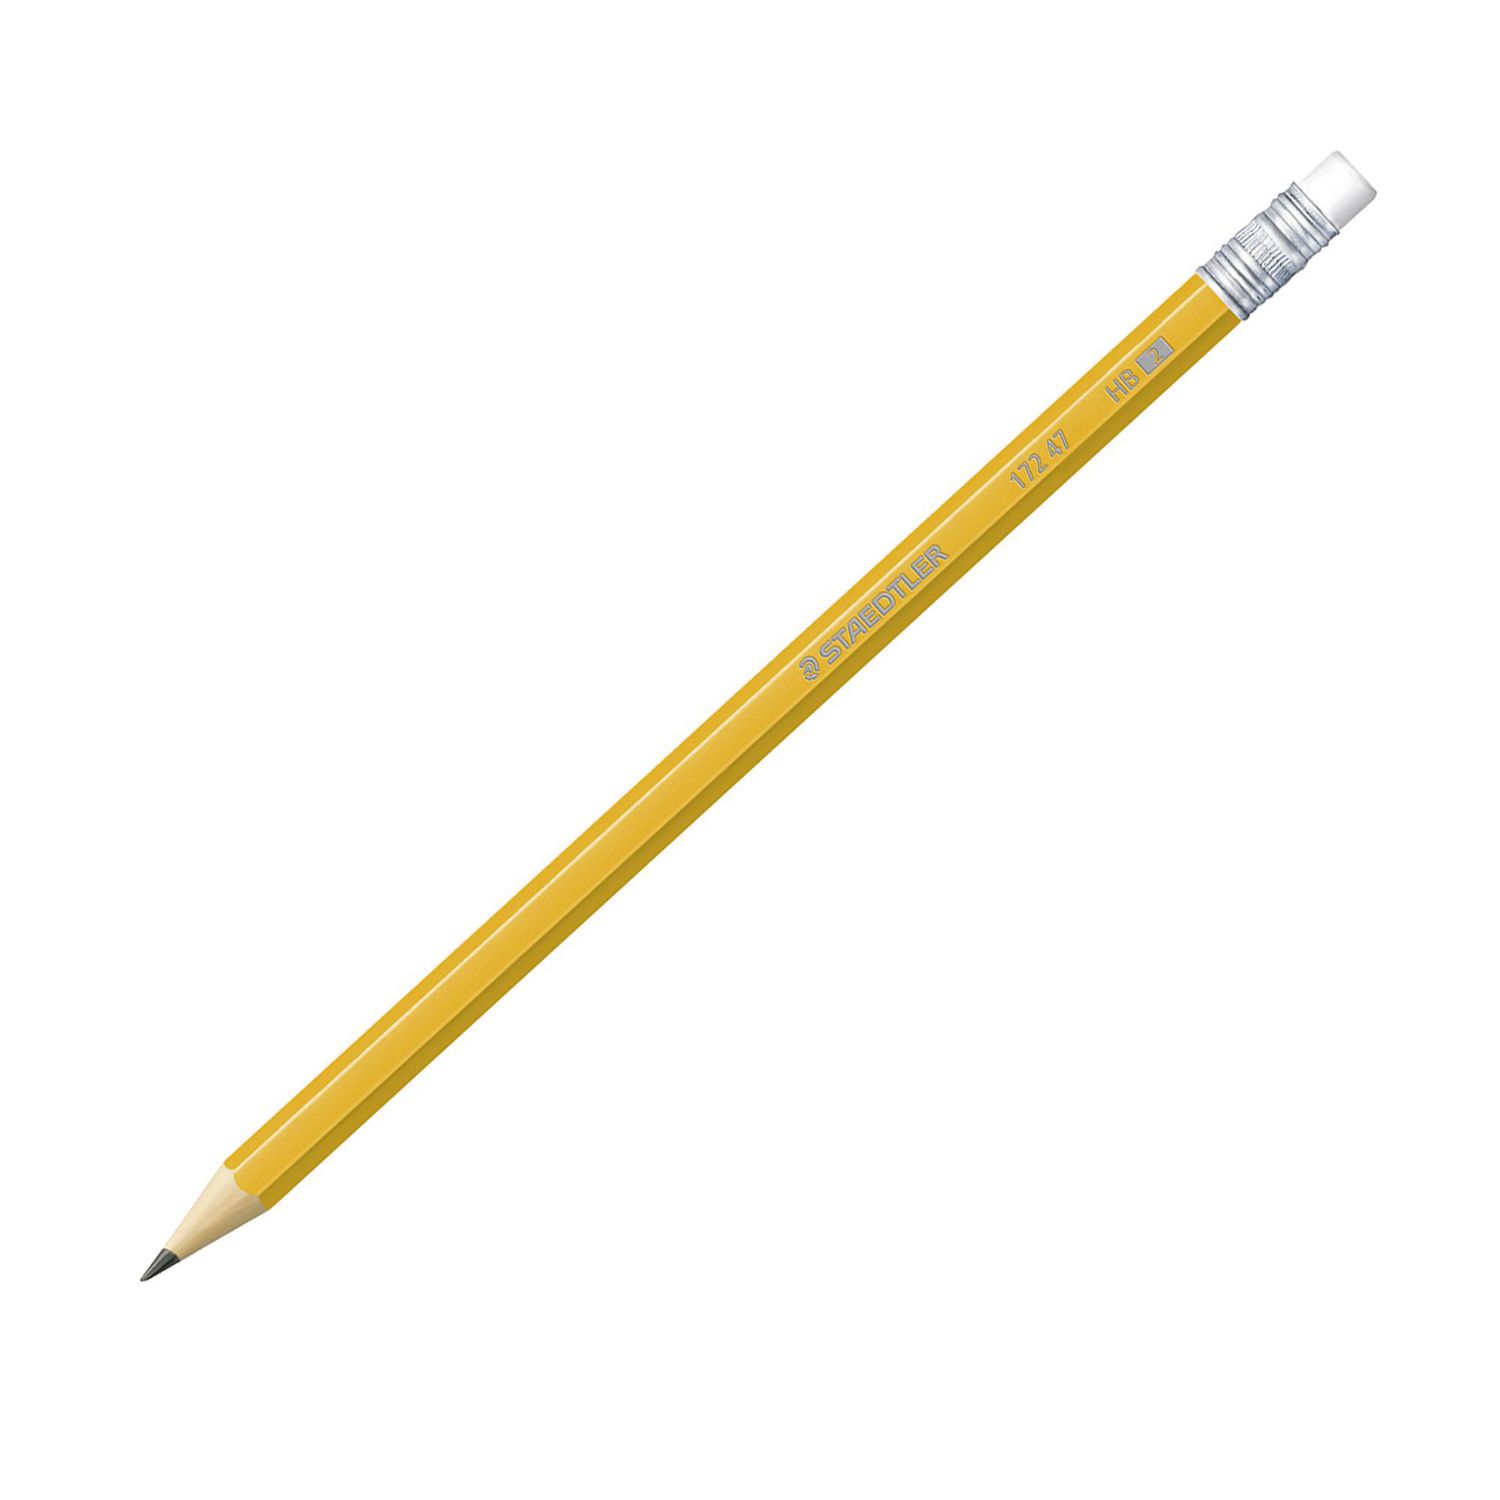 Grand taille-crayon manuel Staedtler avec couvercle coulissant, lame  métallique à deux trous pour crayons standard, gros crayons et crayons de  couleur (51207SBKA6) grand taille crayon manuel 